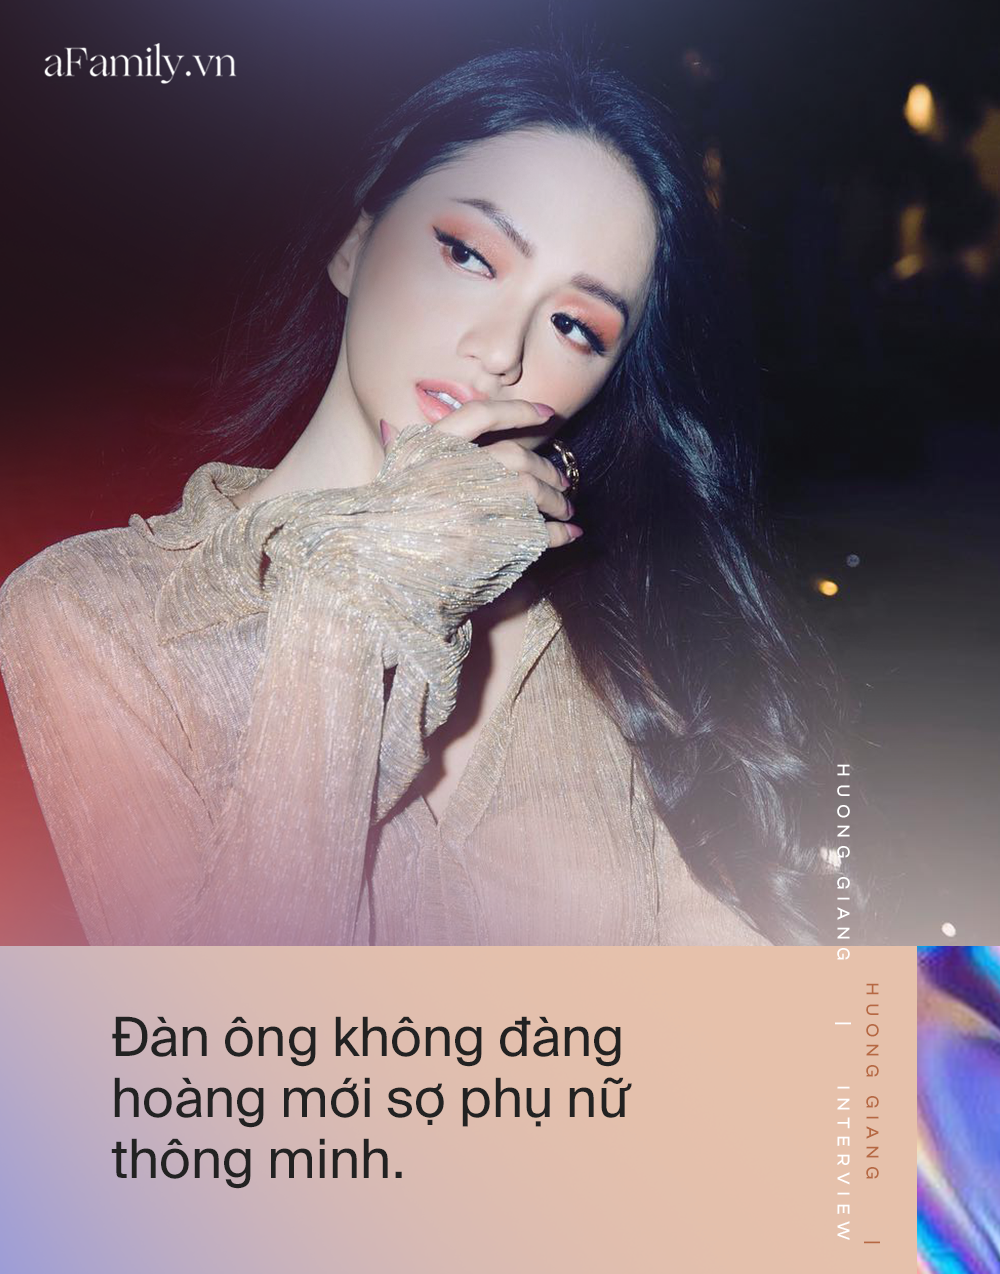 Hoa hậu Hương Giang: Tôi làm gì cho cộng đồng LGBT không cần ai ghi nhận, chia sẻ mấu chốt để "come out" được chấp nhận là sự thành công - Ảnh 6.